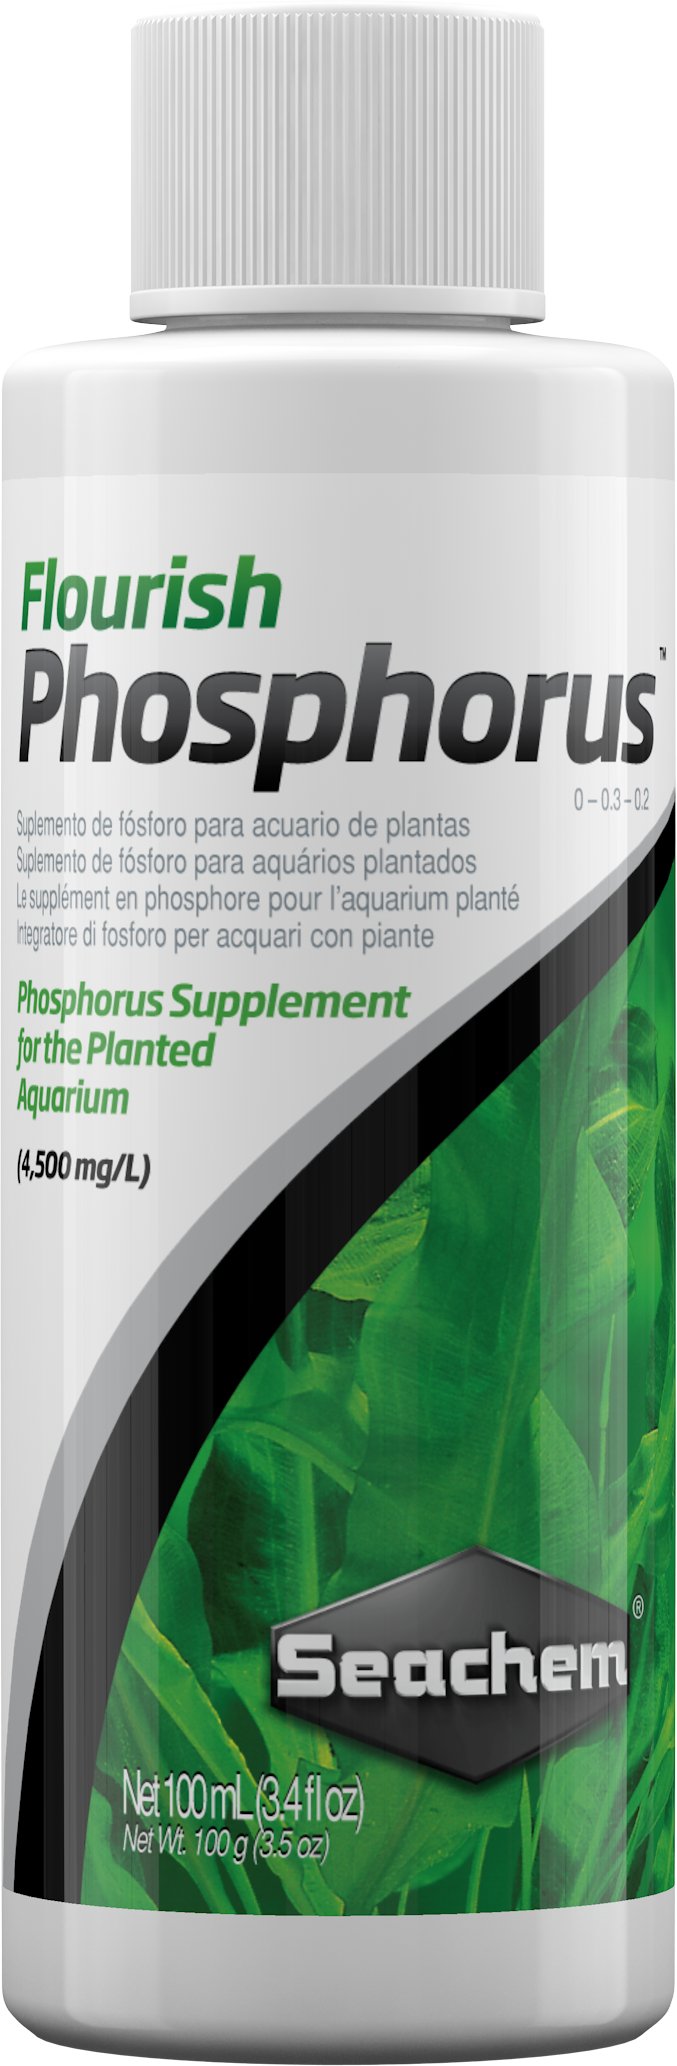 Flourish Phosphorus - Discus Roa Fish